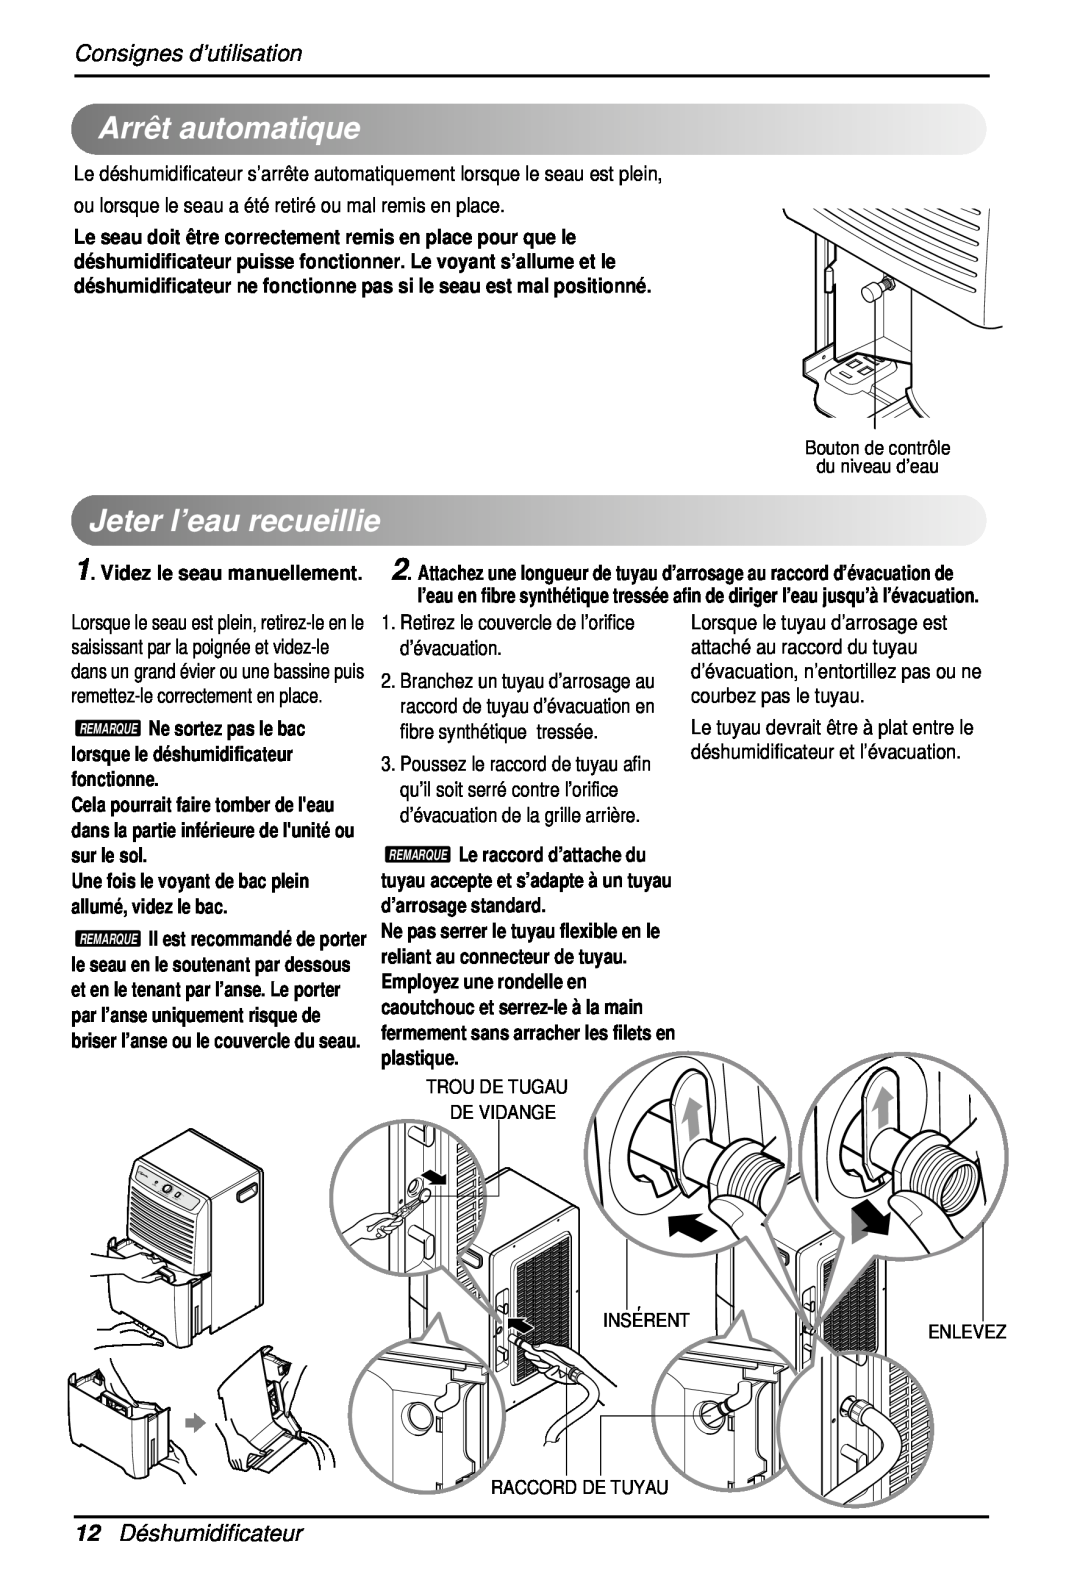 Heat Controller BHD-301 manual Arrêtautomatique, Jeterl’eaurecueillie, Consignes d’utilisation, 12Déshumidificateur 